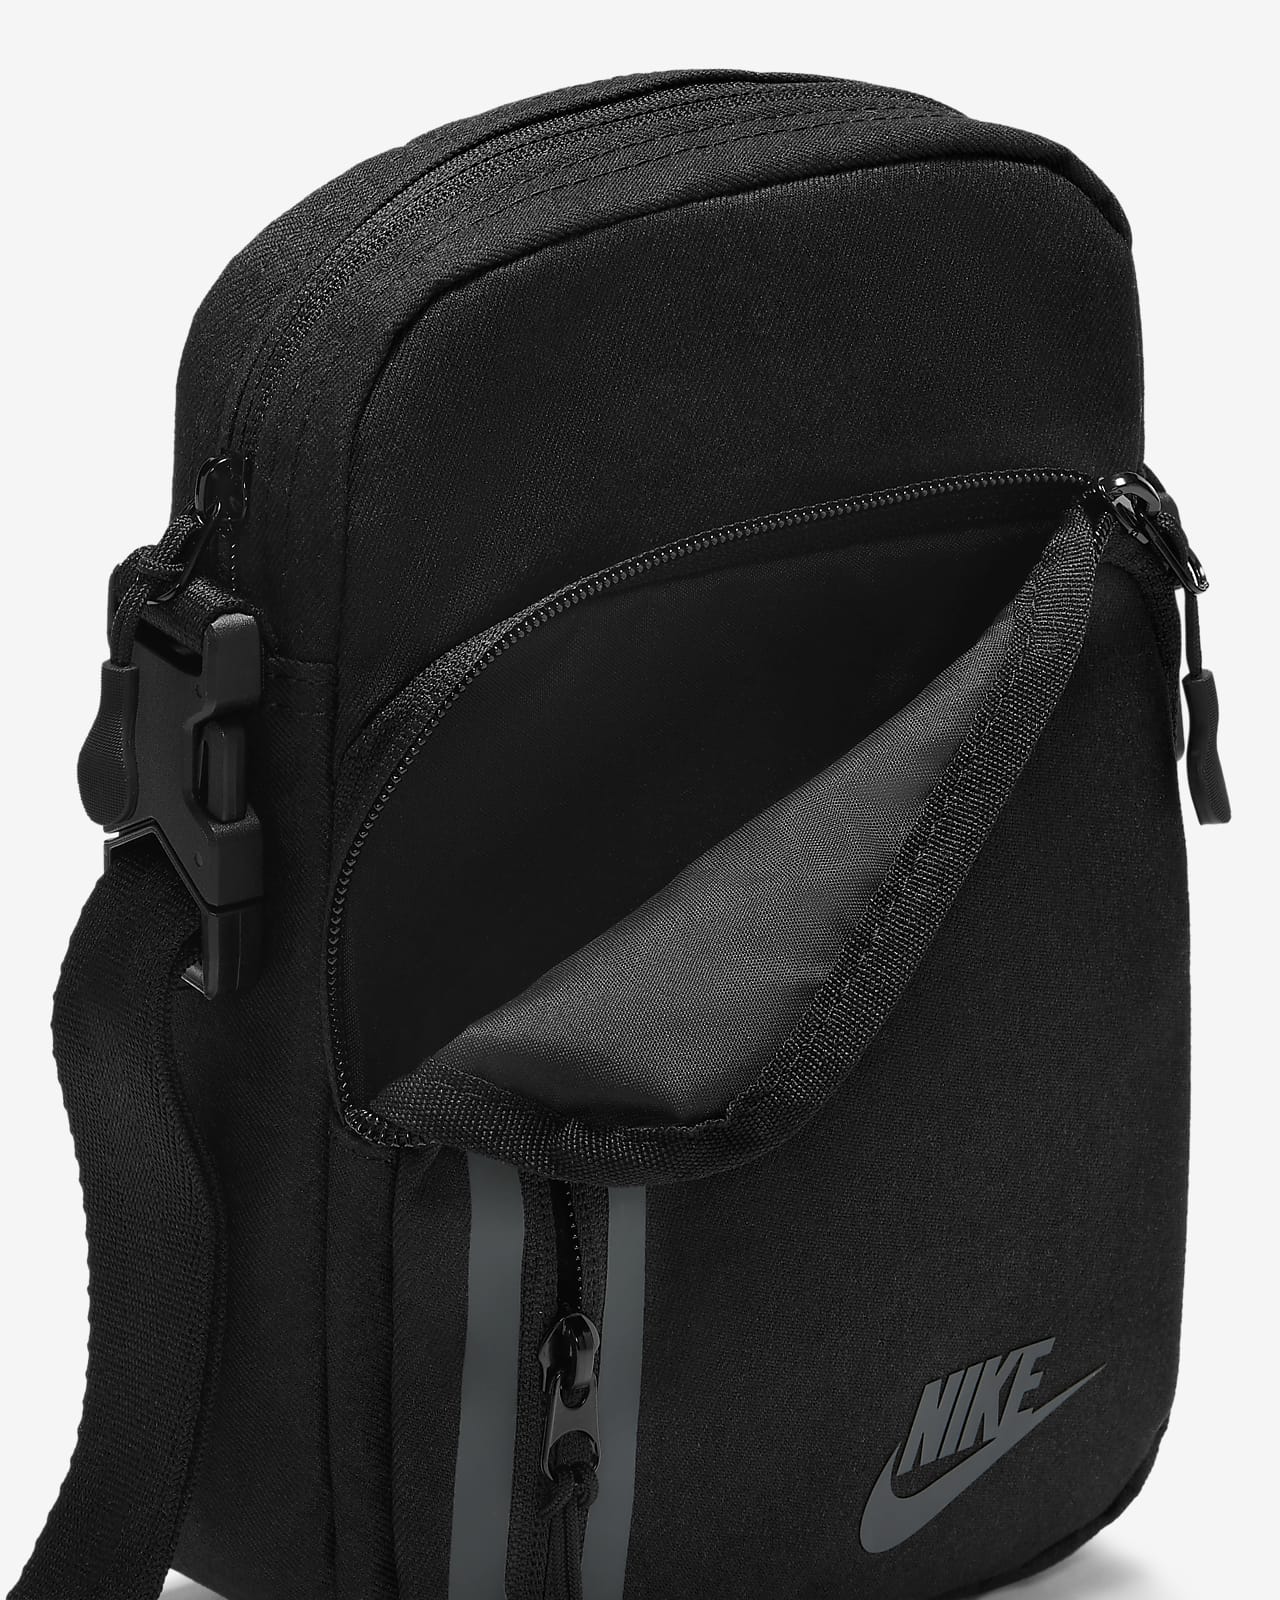 2021年レディースファッション福袋特集 Nike archive body bag kids-nurie.com